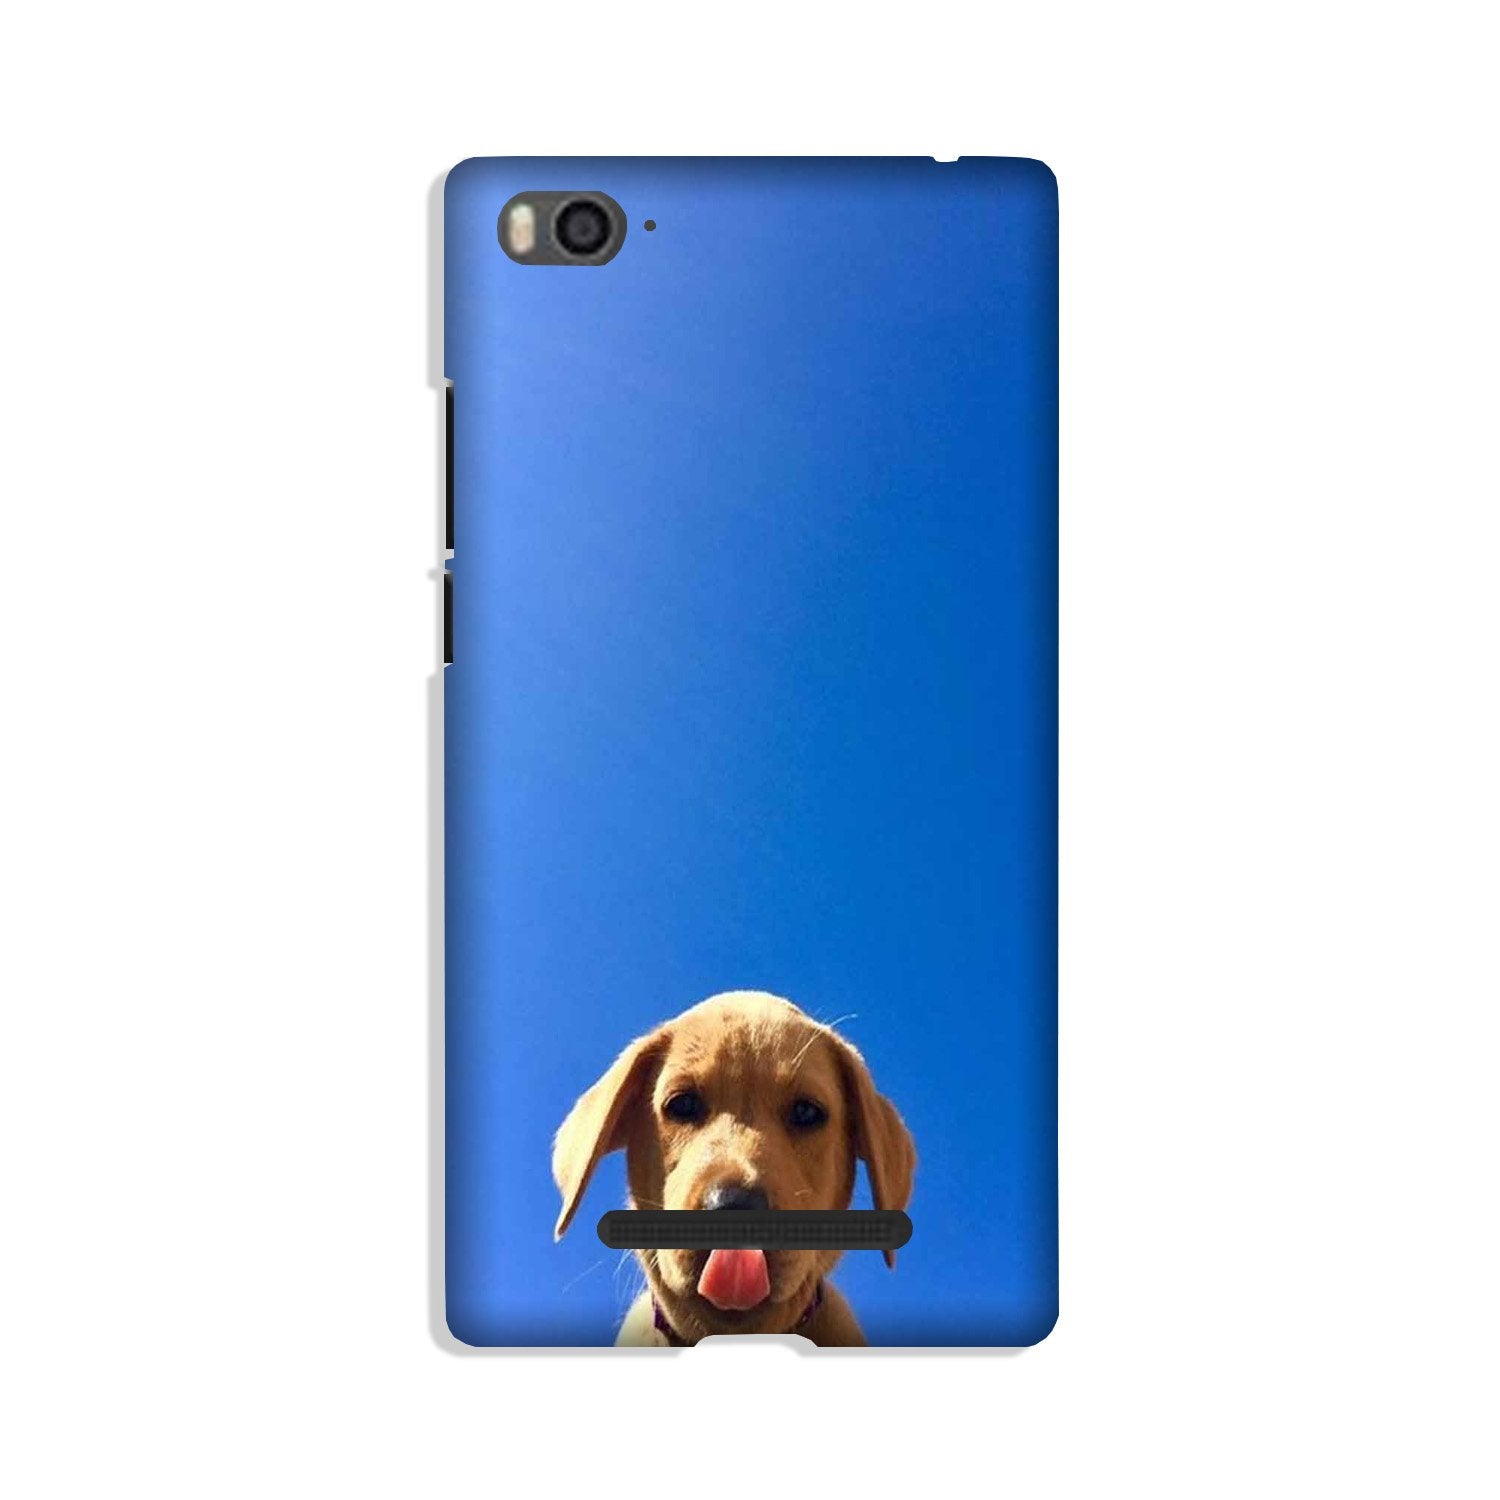 Dog Mobile Back Case for Xiaomi Mi 4i (Design - 332)